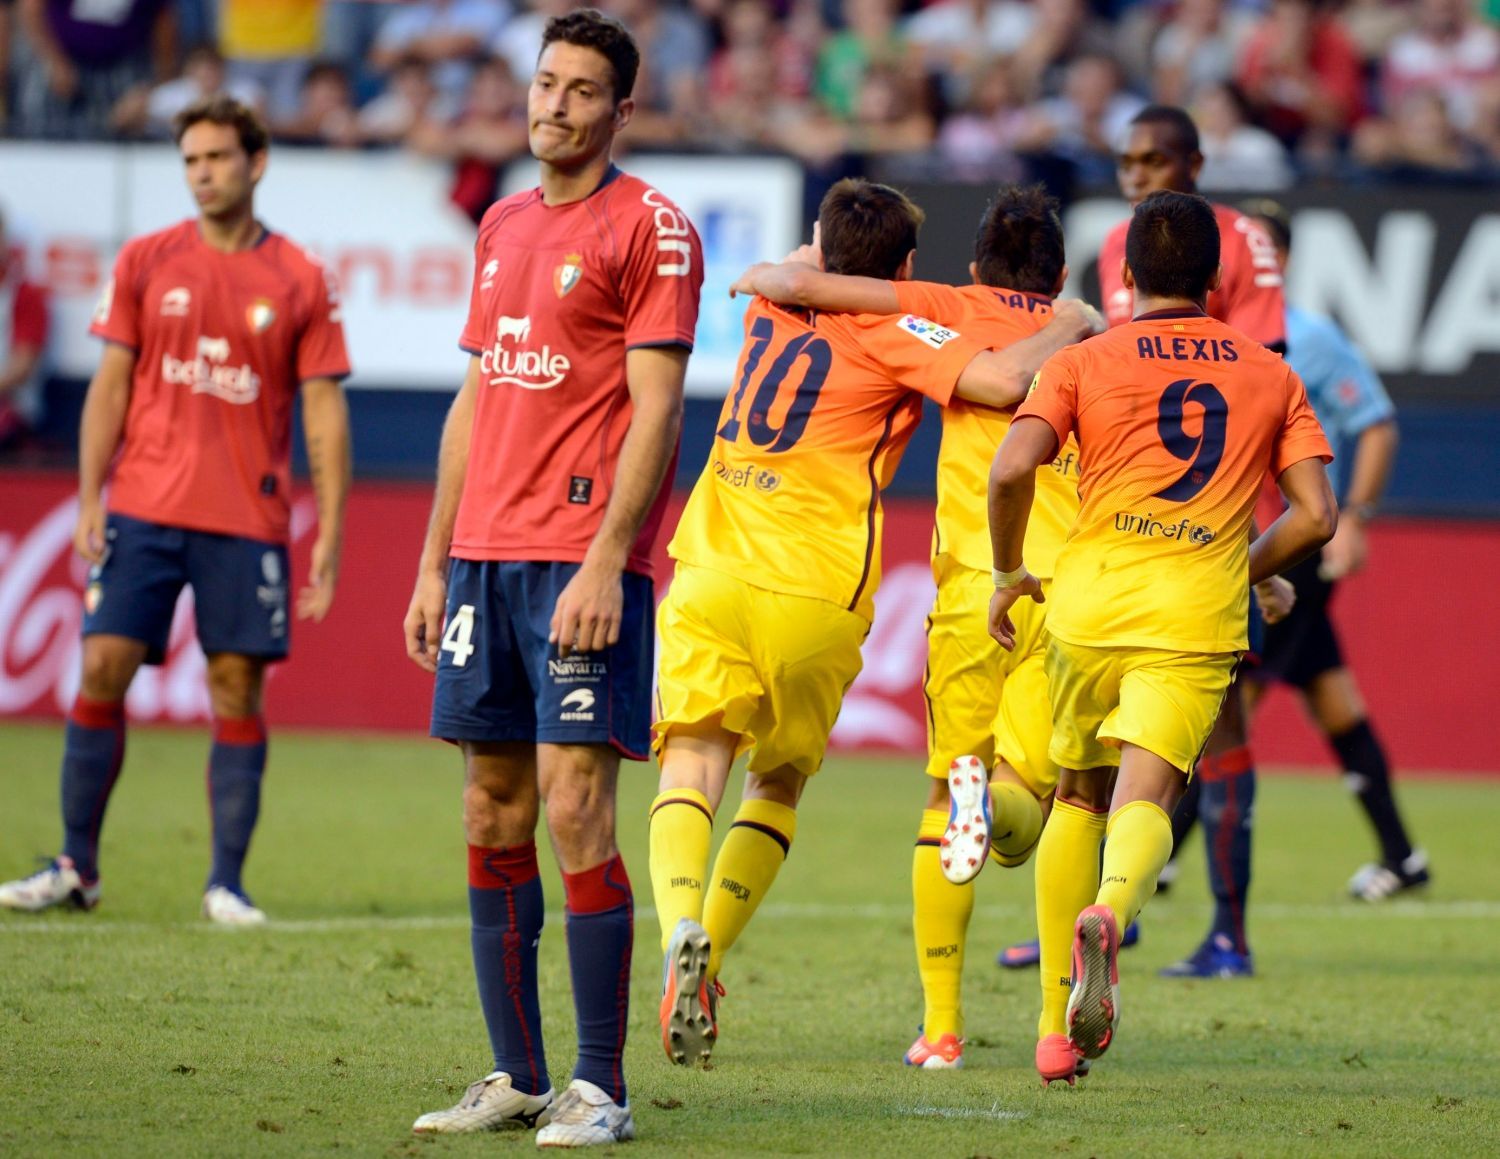 Fotbalisté Barcelony slaví gól v utkání La Ligy 2012/13 s Osasunou.